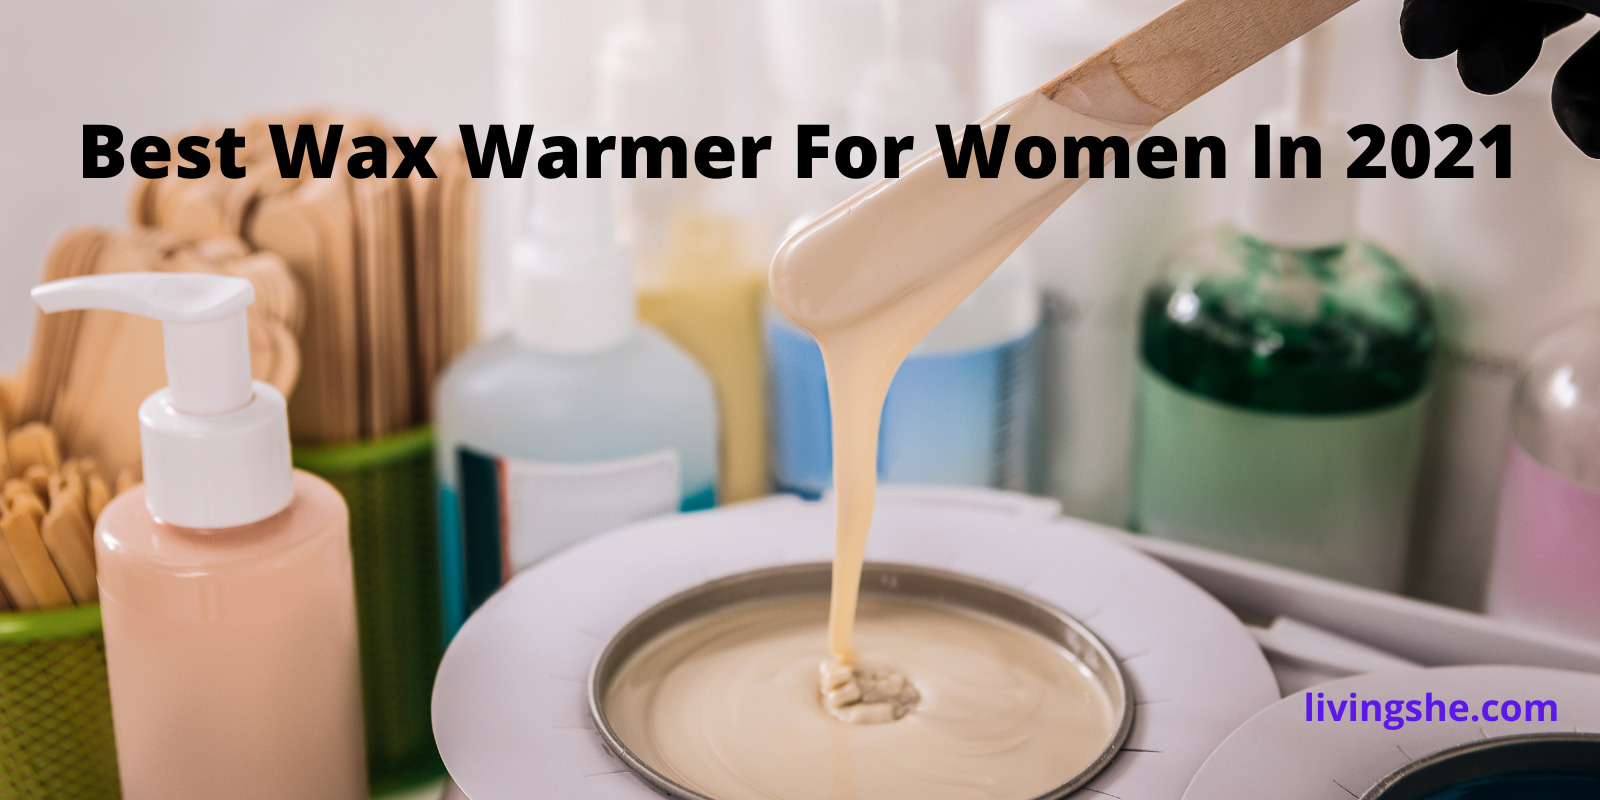 15 BEST WAX WARMER FOR WOMEN IN 2021 [REVIEWED]